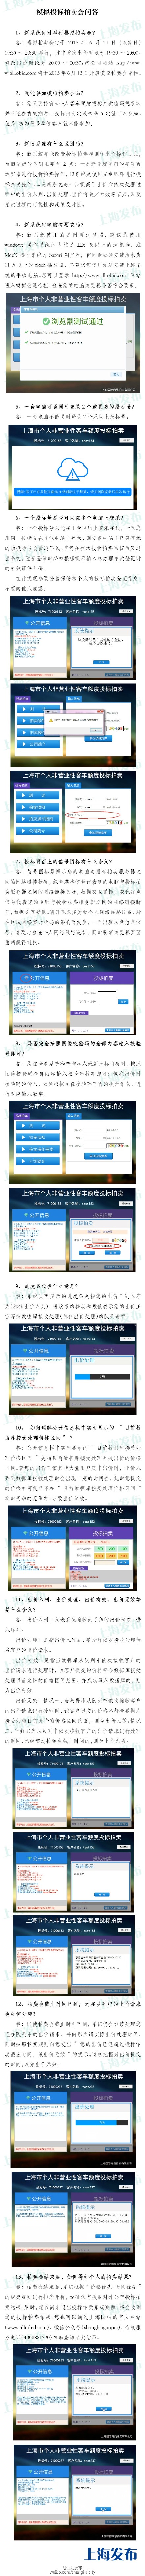 上海车牌拍卖系统即将升级 14日晚竞买者可练手